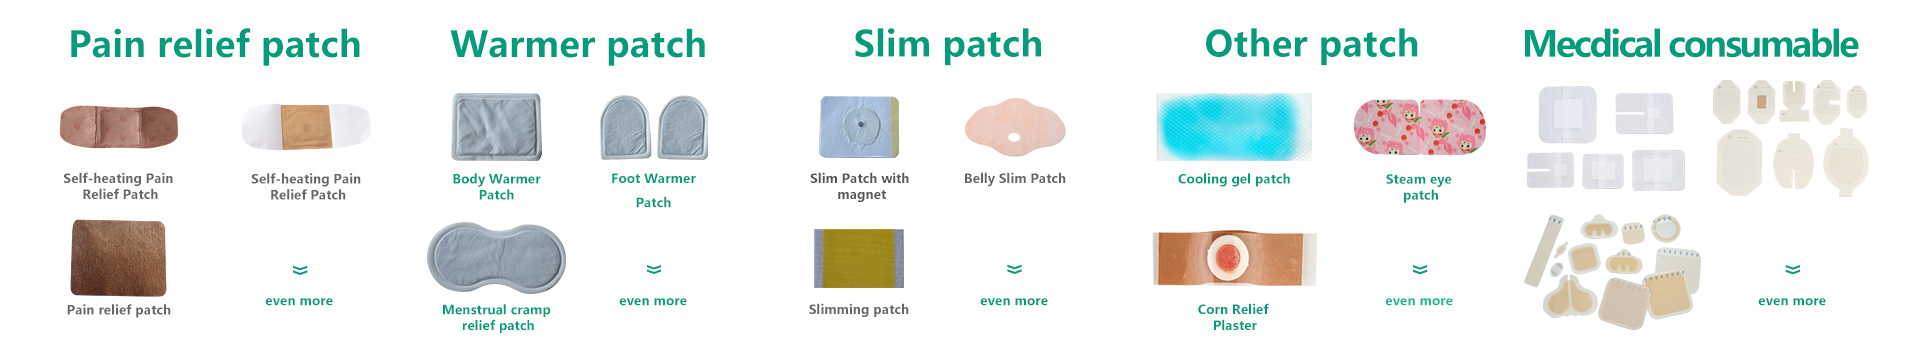 Belly Slim Patch